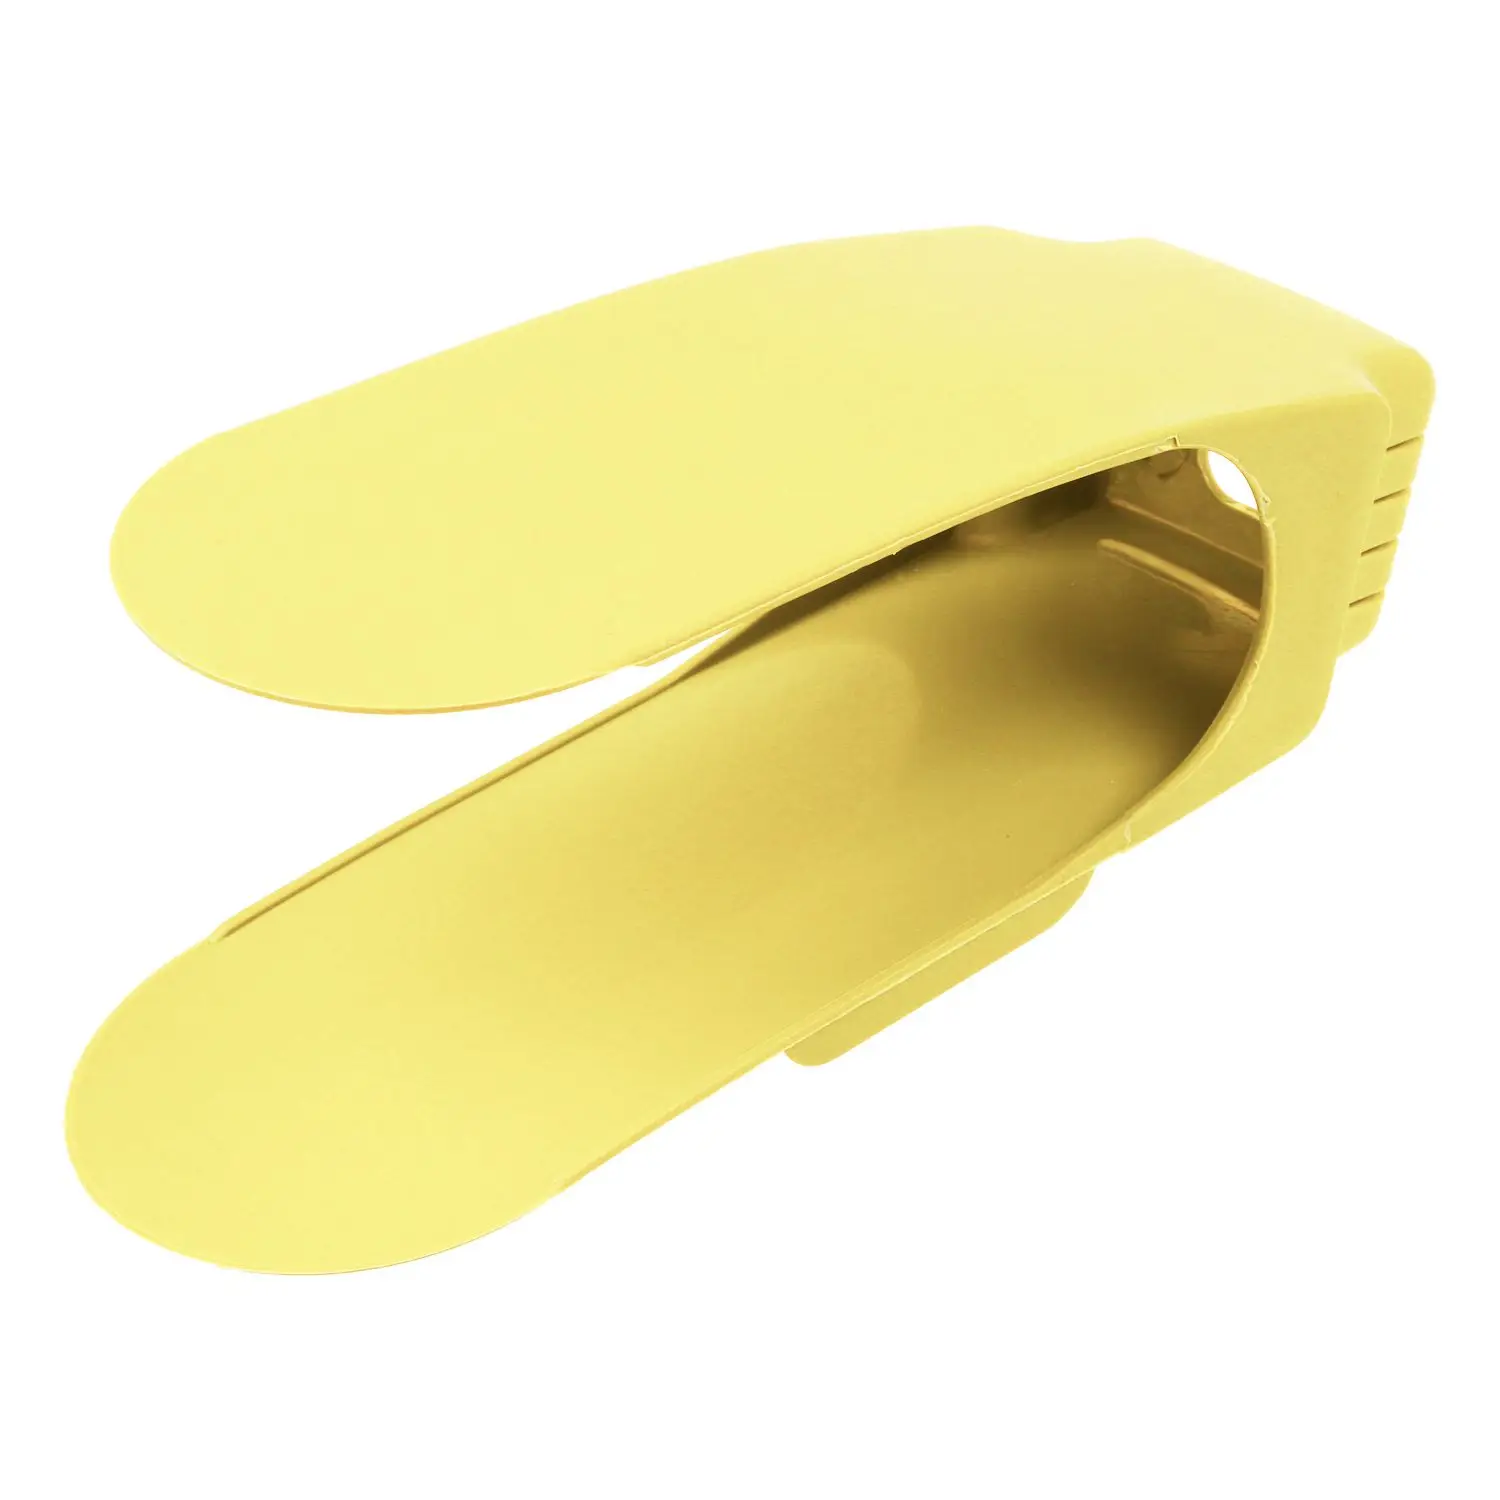 Пластиковый стеллаж для хранения обуви Shleves двойная обувь с широкой колодкой держатель экономит место органайзер для обуви 25*9,5 см